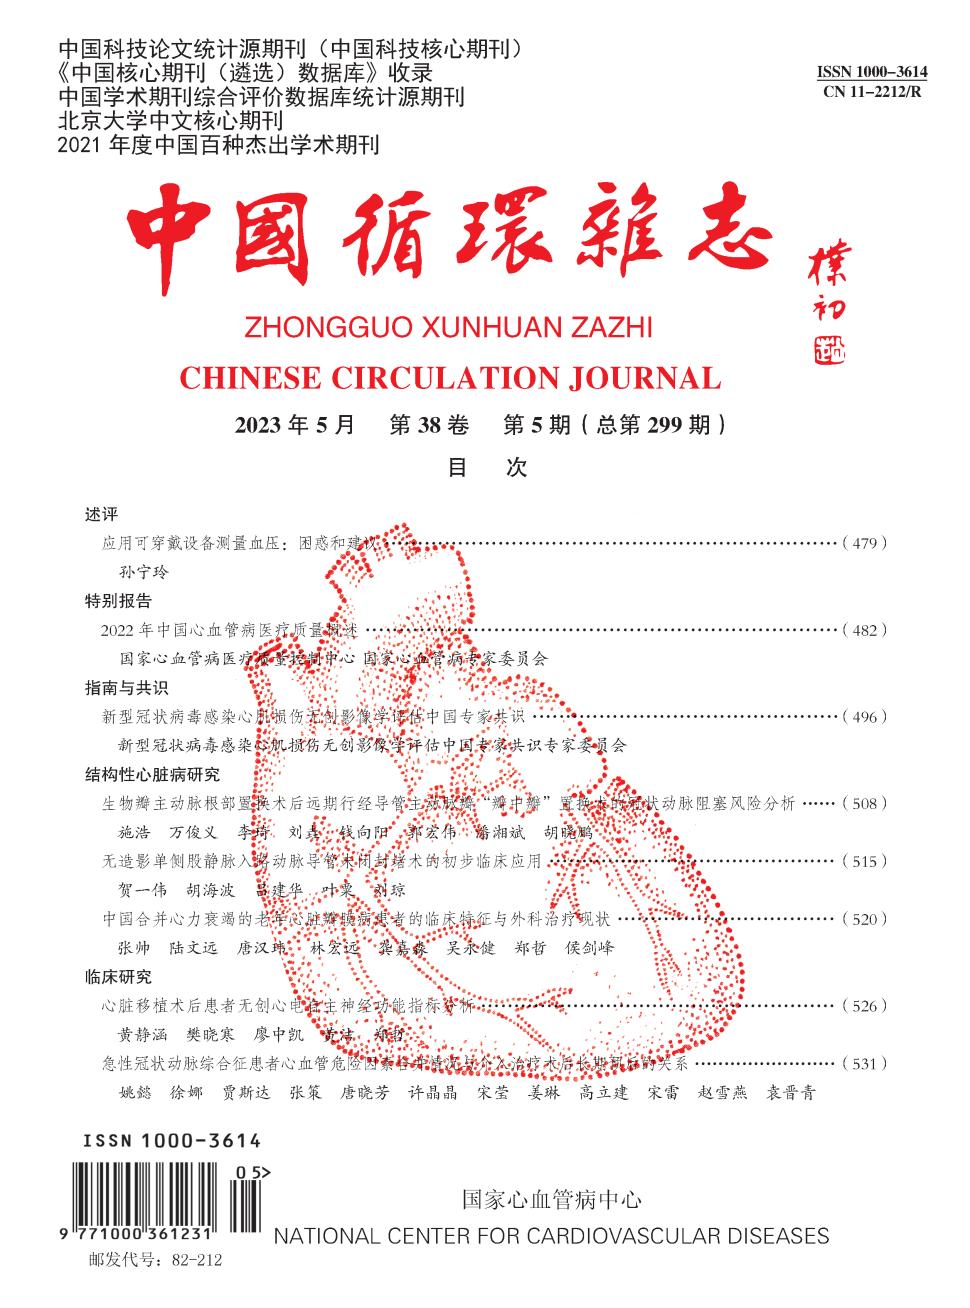 中国循环期刊